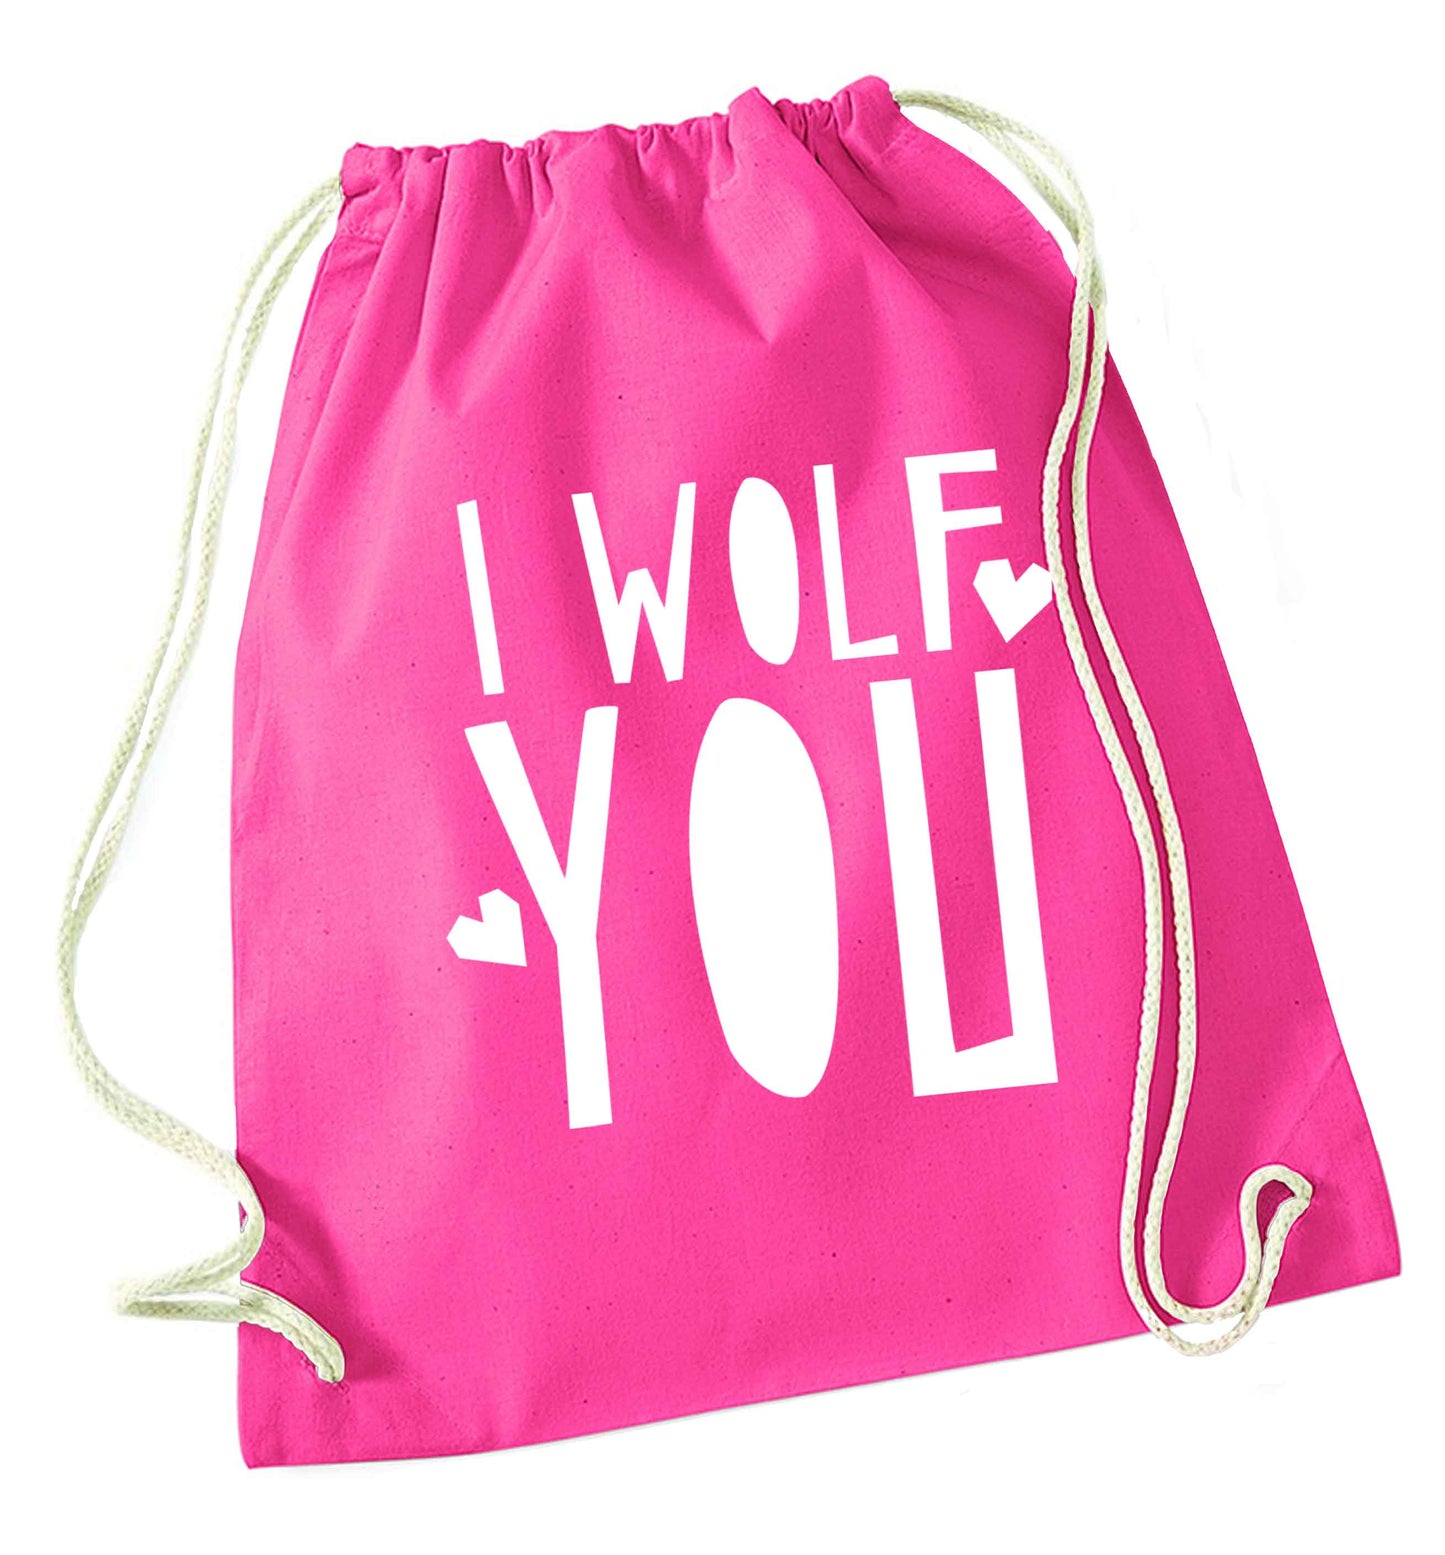 I wolf you pink drawstring bag